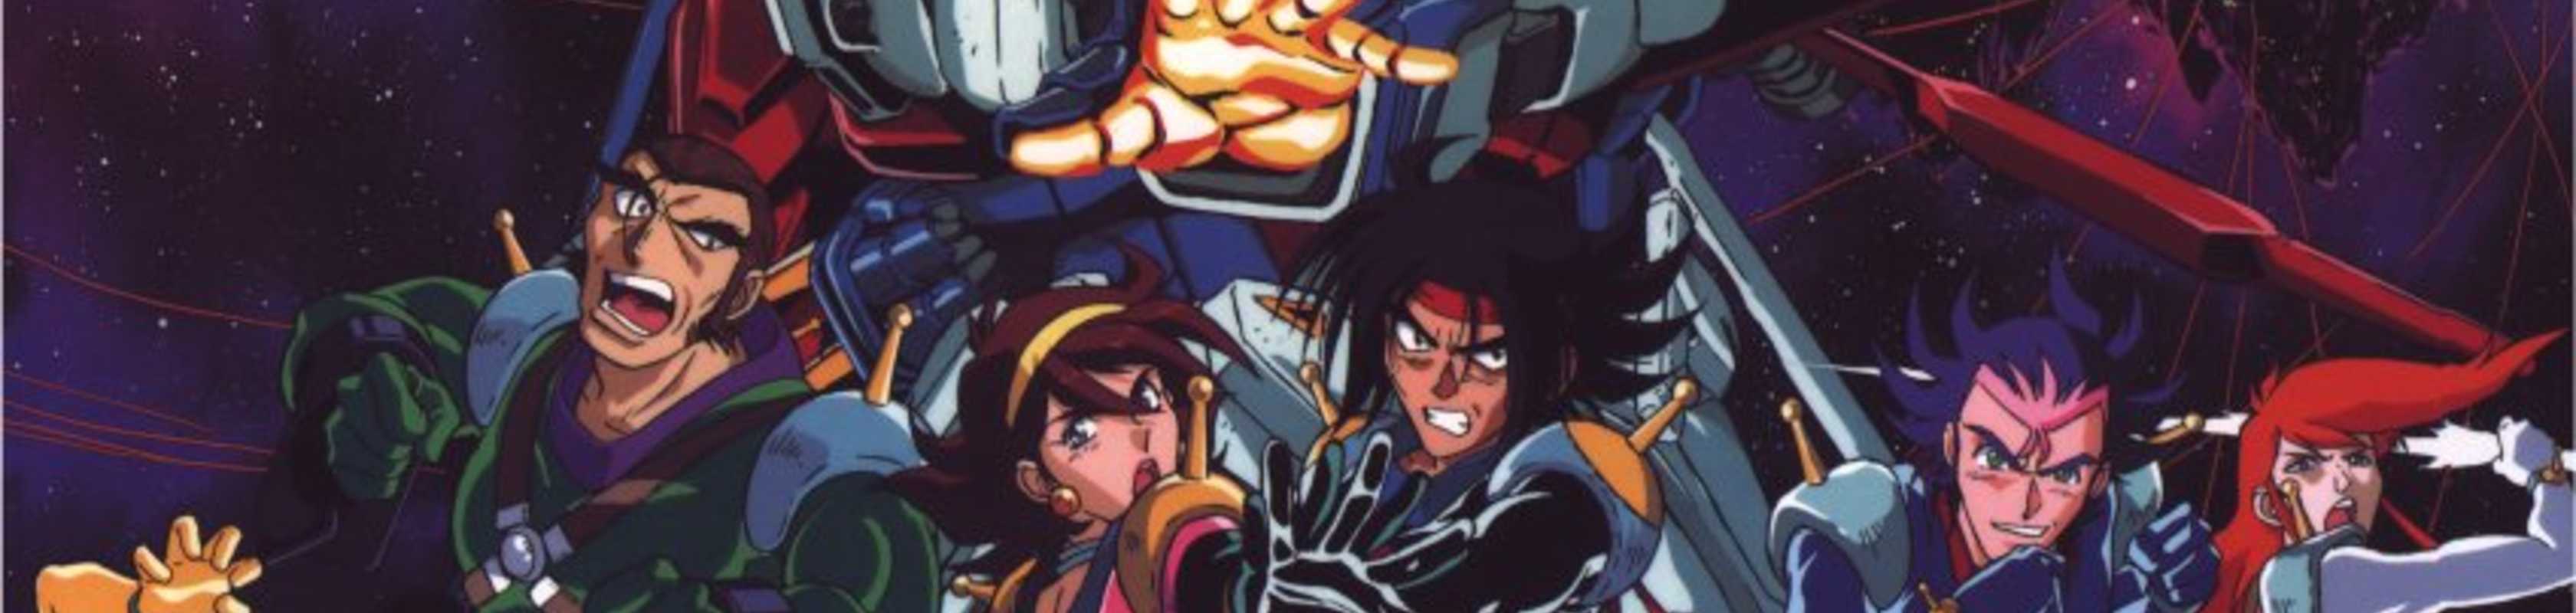 Mobile Fighter G Gundam cover